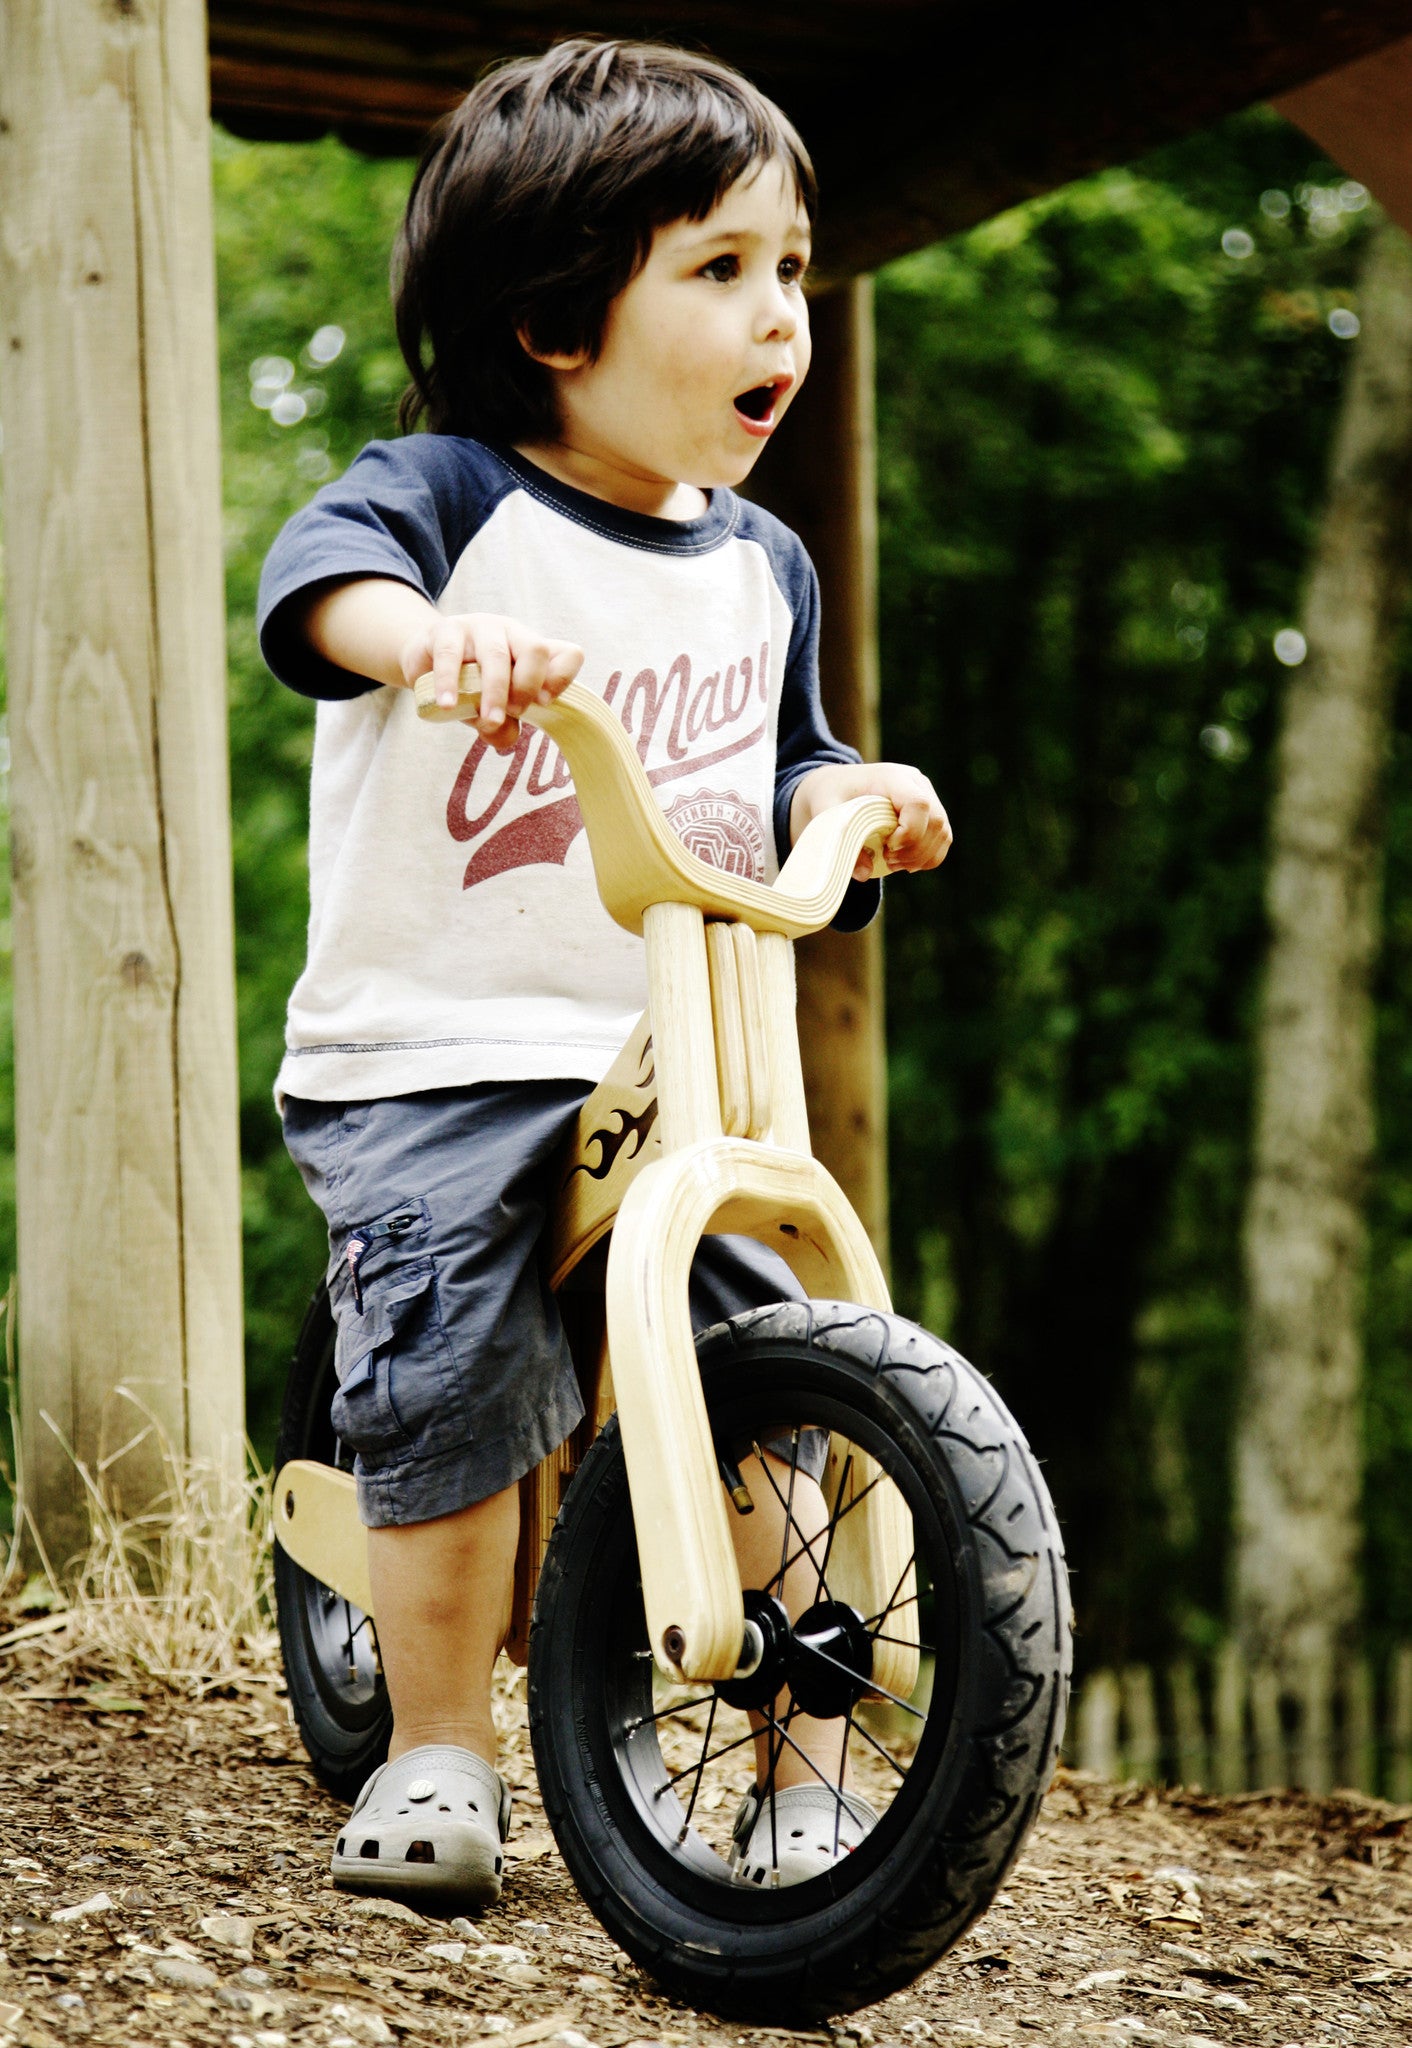 childrens balance bike